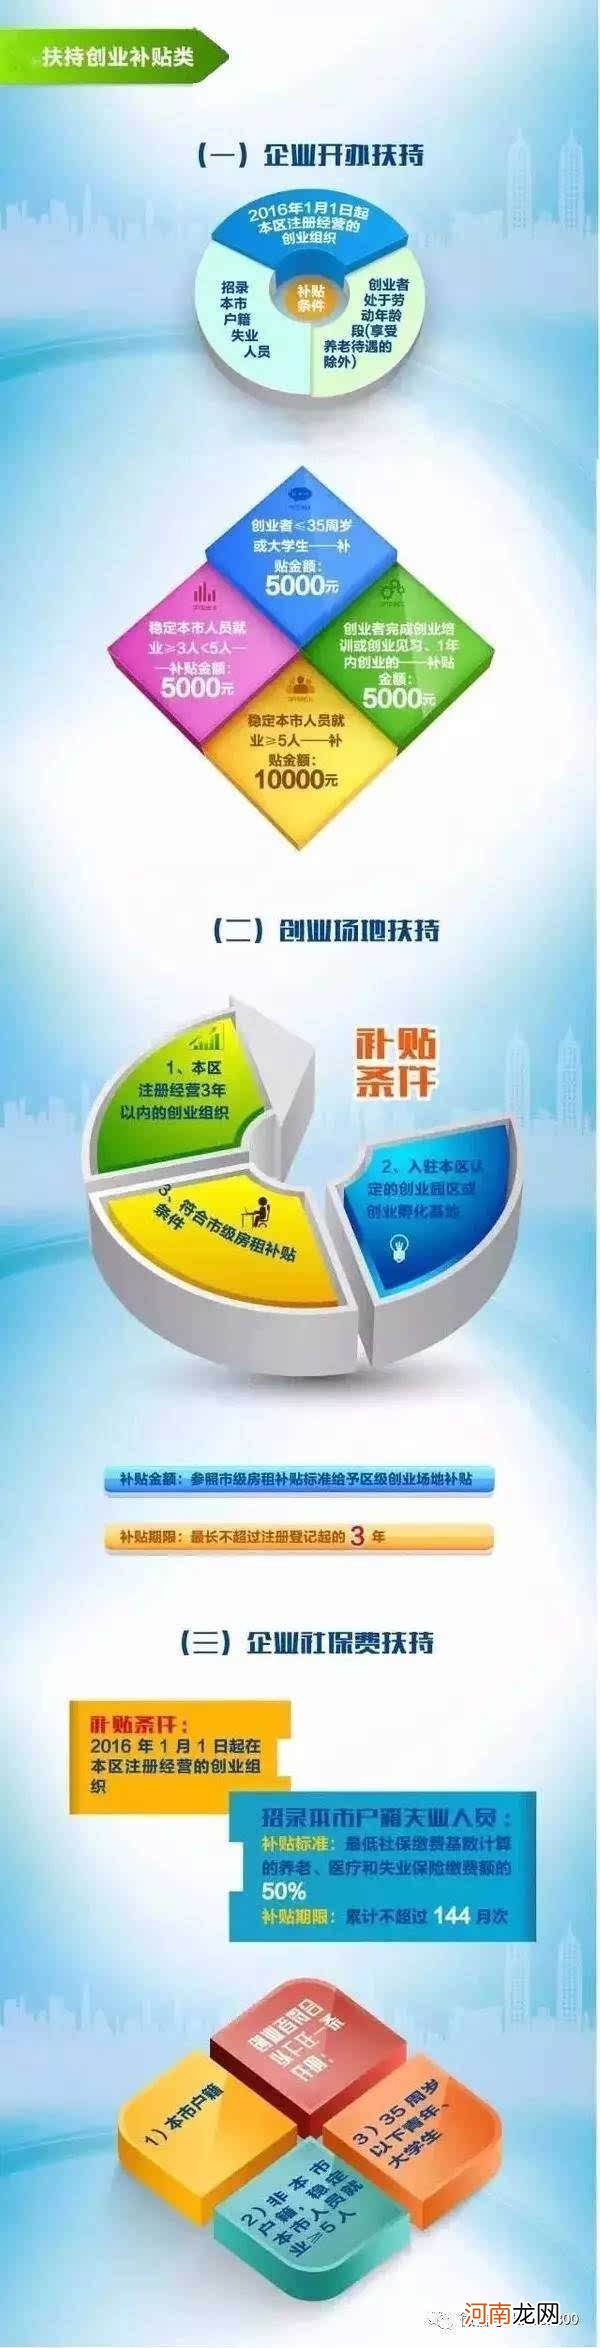 上海黄浦区创业扶持贷款 上海黄浦区创业扶持贷款申请